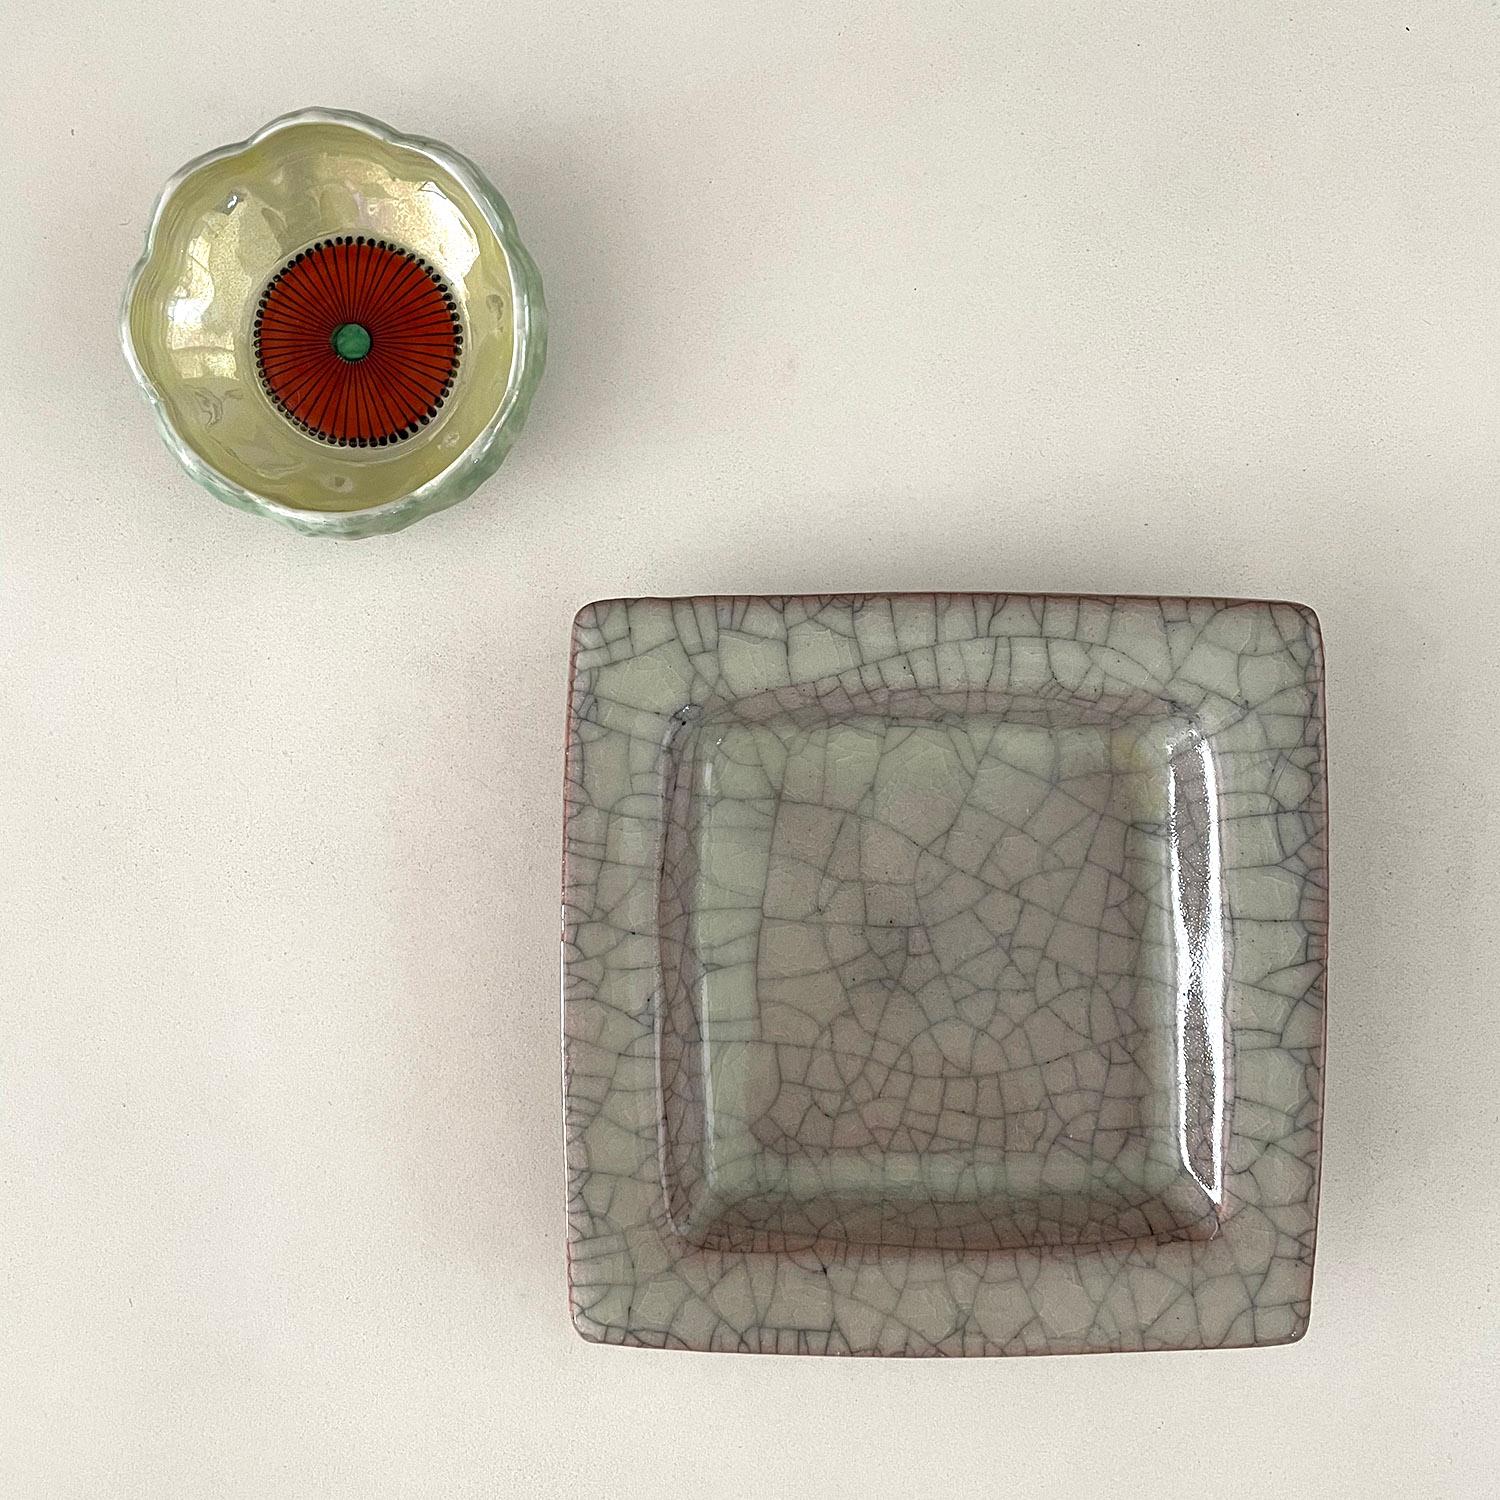 Japanisches Raku fängt alles auf 
Japan, etwa 1960er Jahre
Keramisches Gefäß mit Craquelé-Glasur, die einen reichen organischen Unterton mit einem Hauch von Rouge und Lavendel zeigt
Schönes Statement-Stück
Can als Auffangbehälter oder Aschenbecher